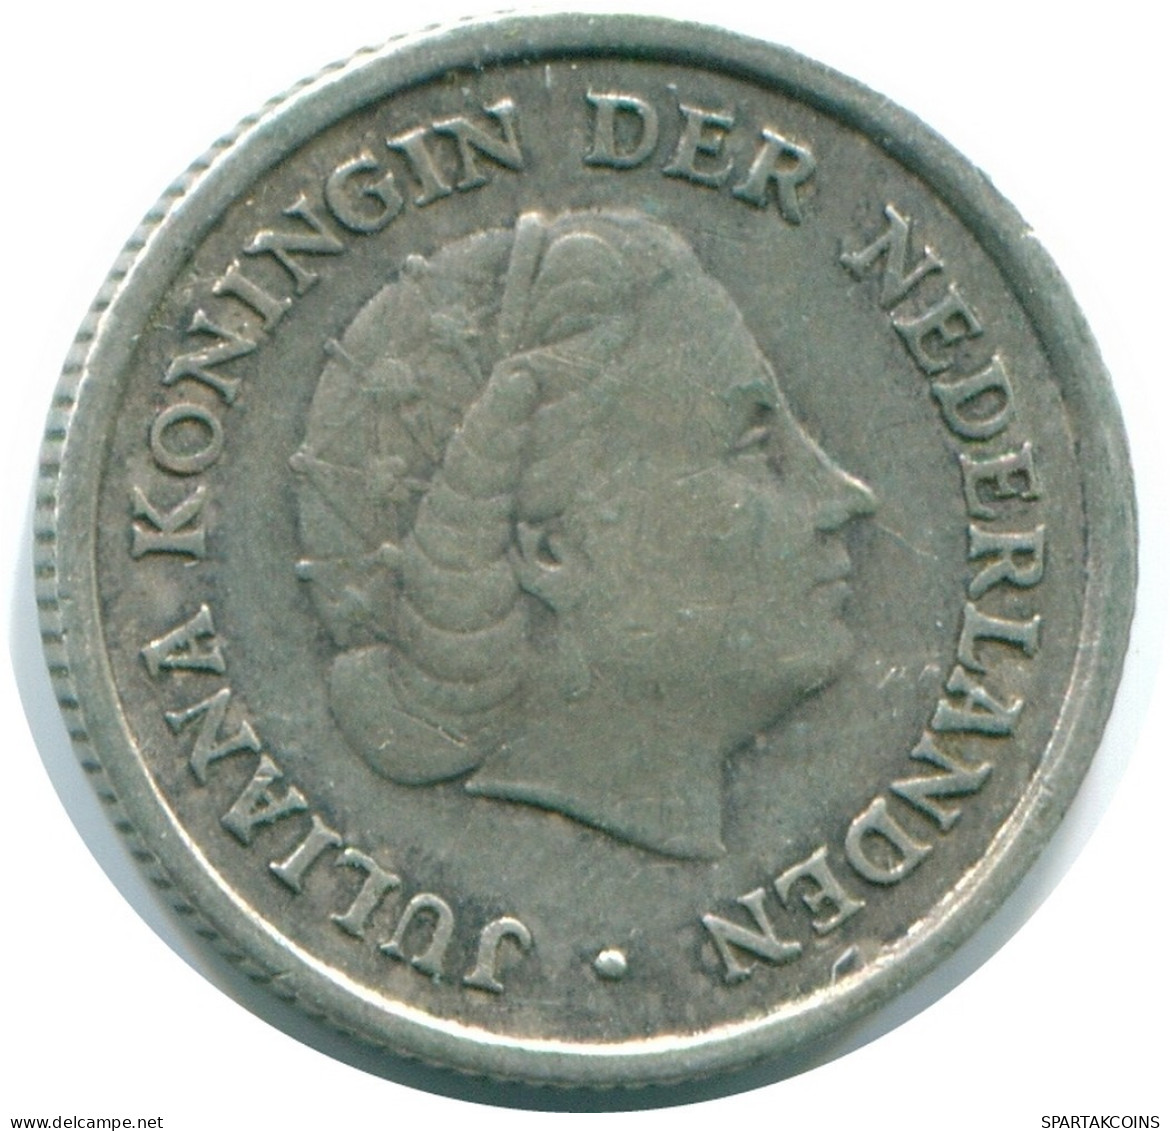 1/10 GULDEN 1962 NIEDERLÄNDISCHE ANTILLEN SILBER Koloniale Münze #NL12407.3.D.A - Niederländische Antillen